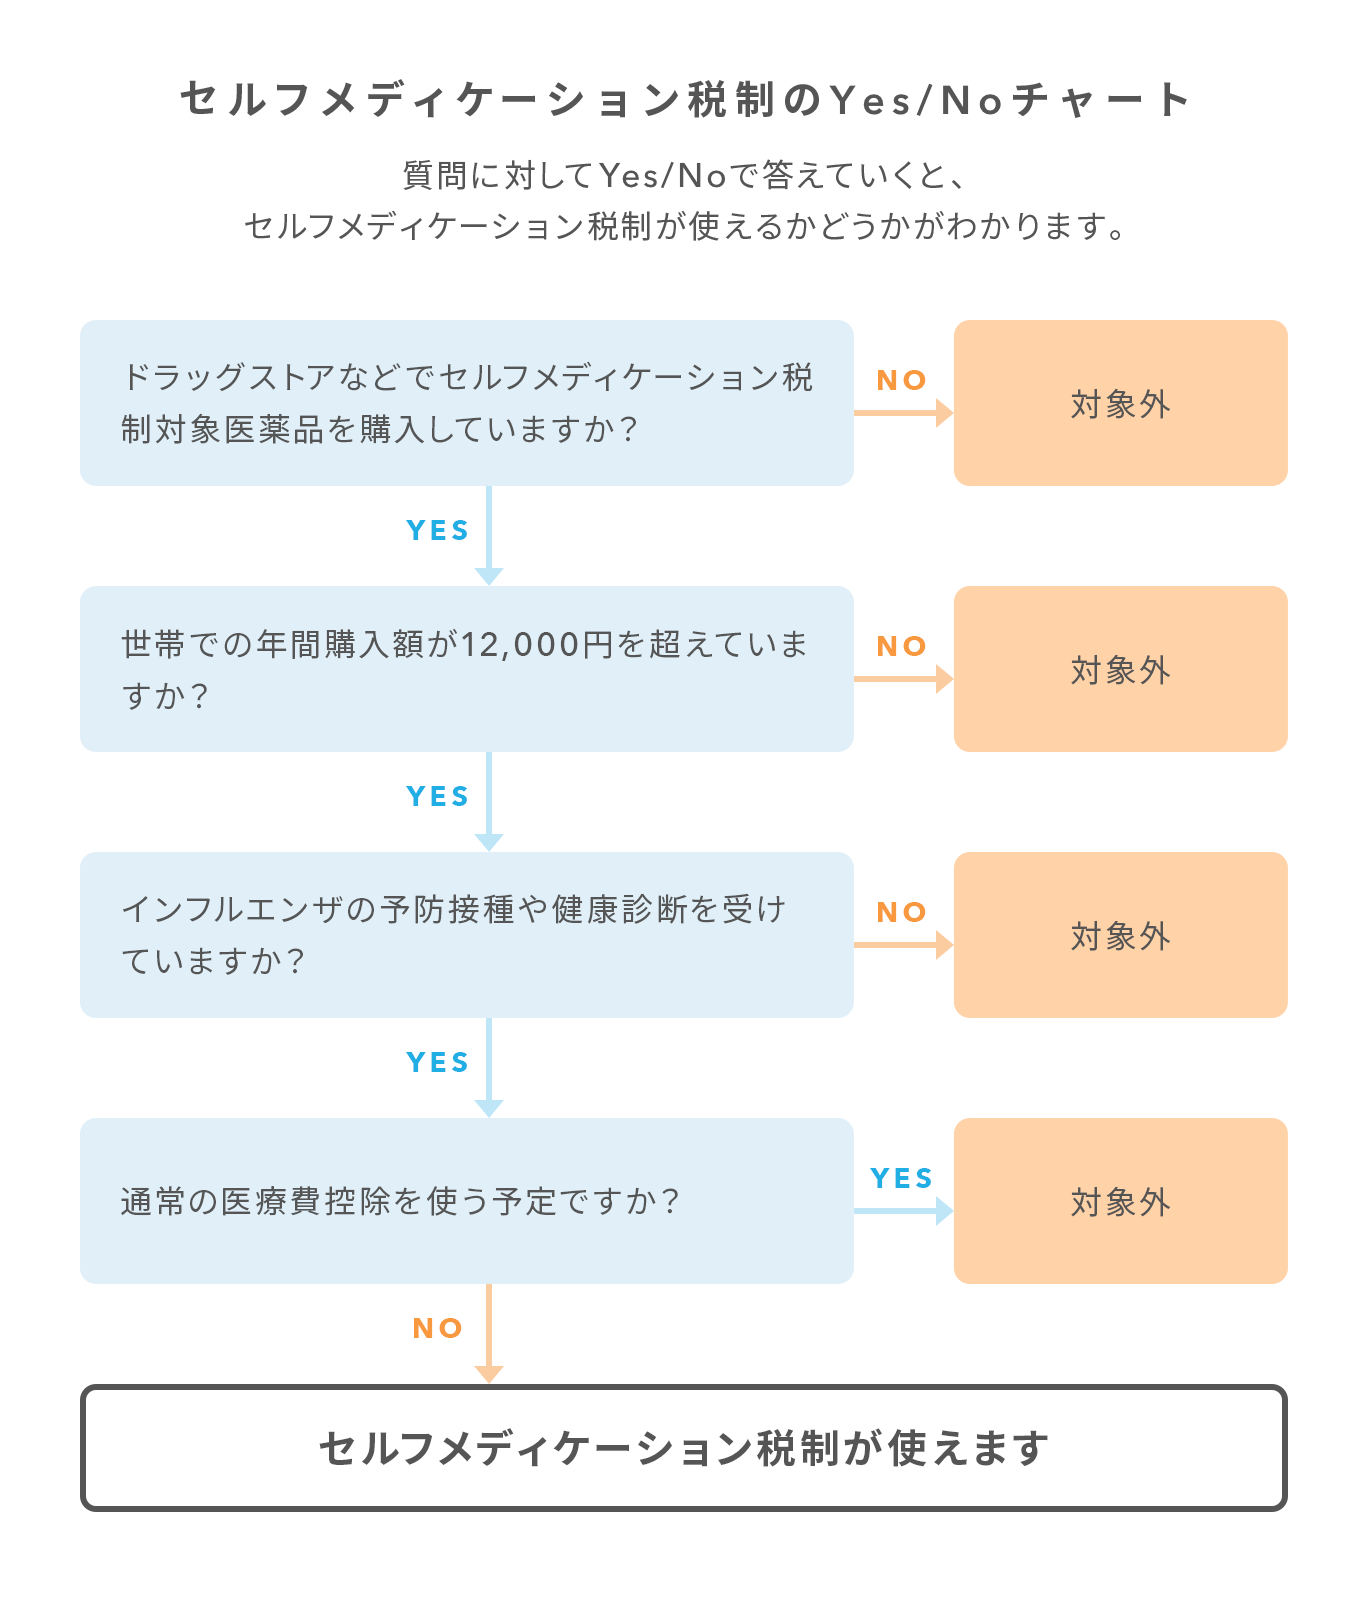 セルフメディケーション税制のYes/Noチャート